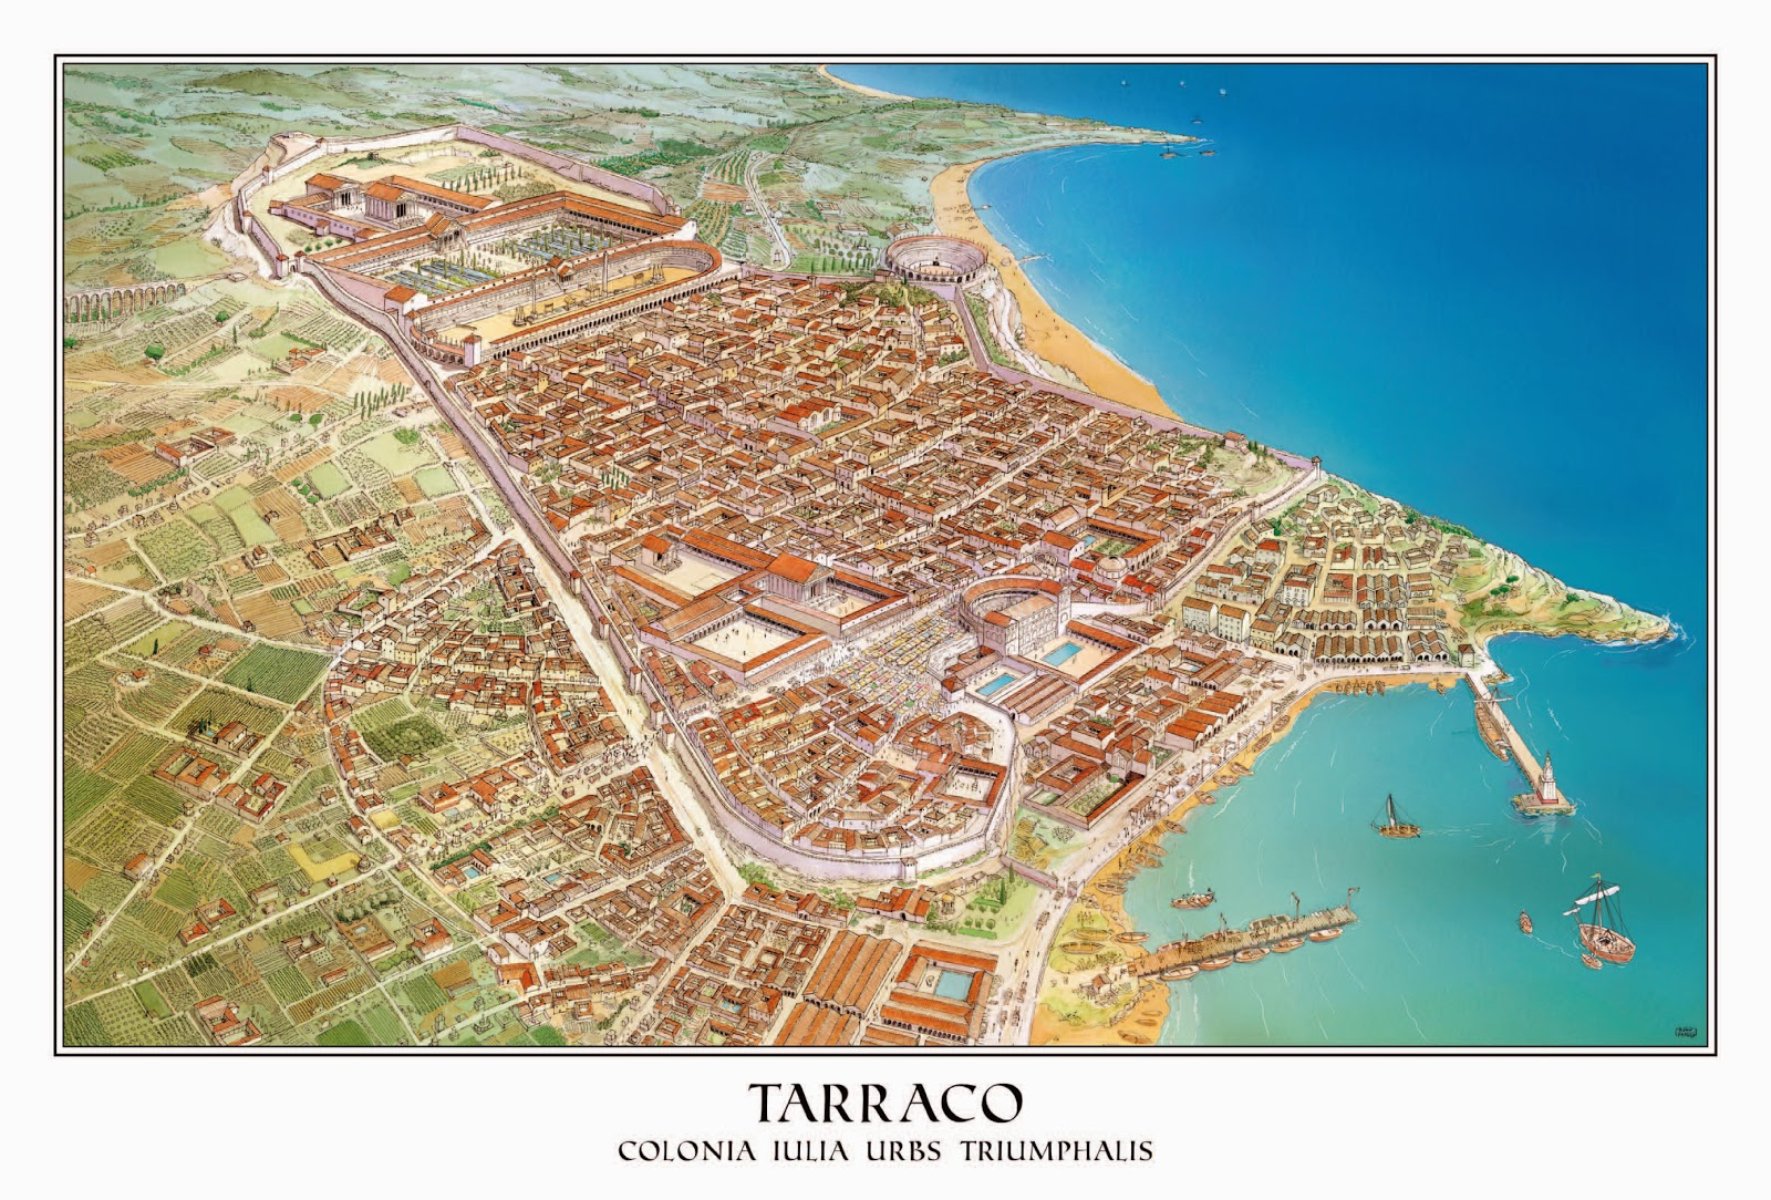 Avit, el candidat de les elits de la Tarraconense, és nomenat emperador romà